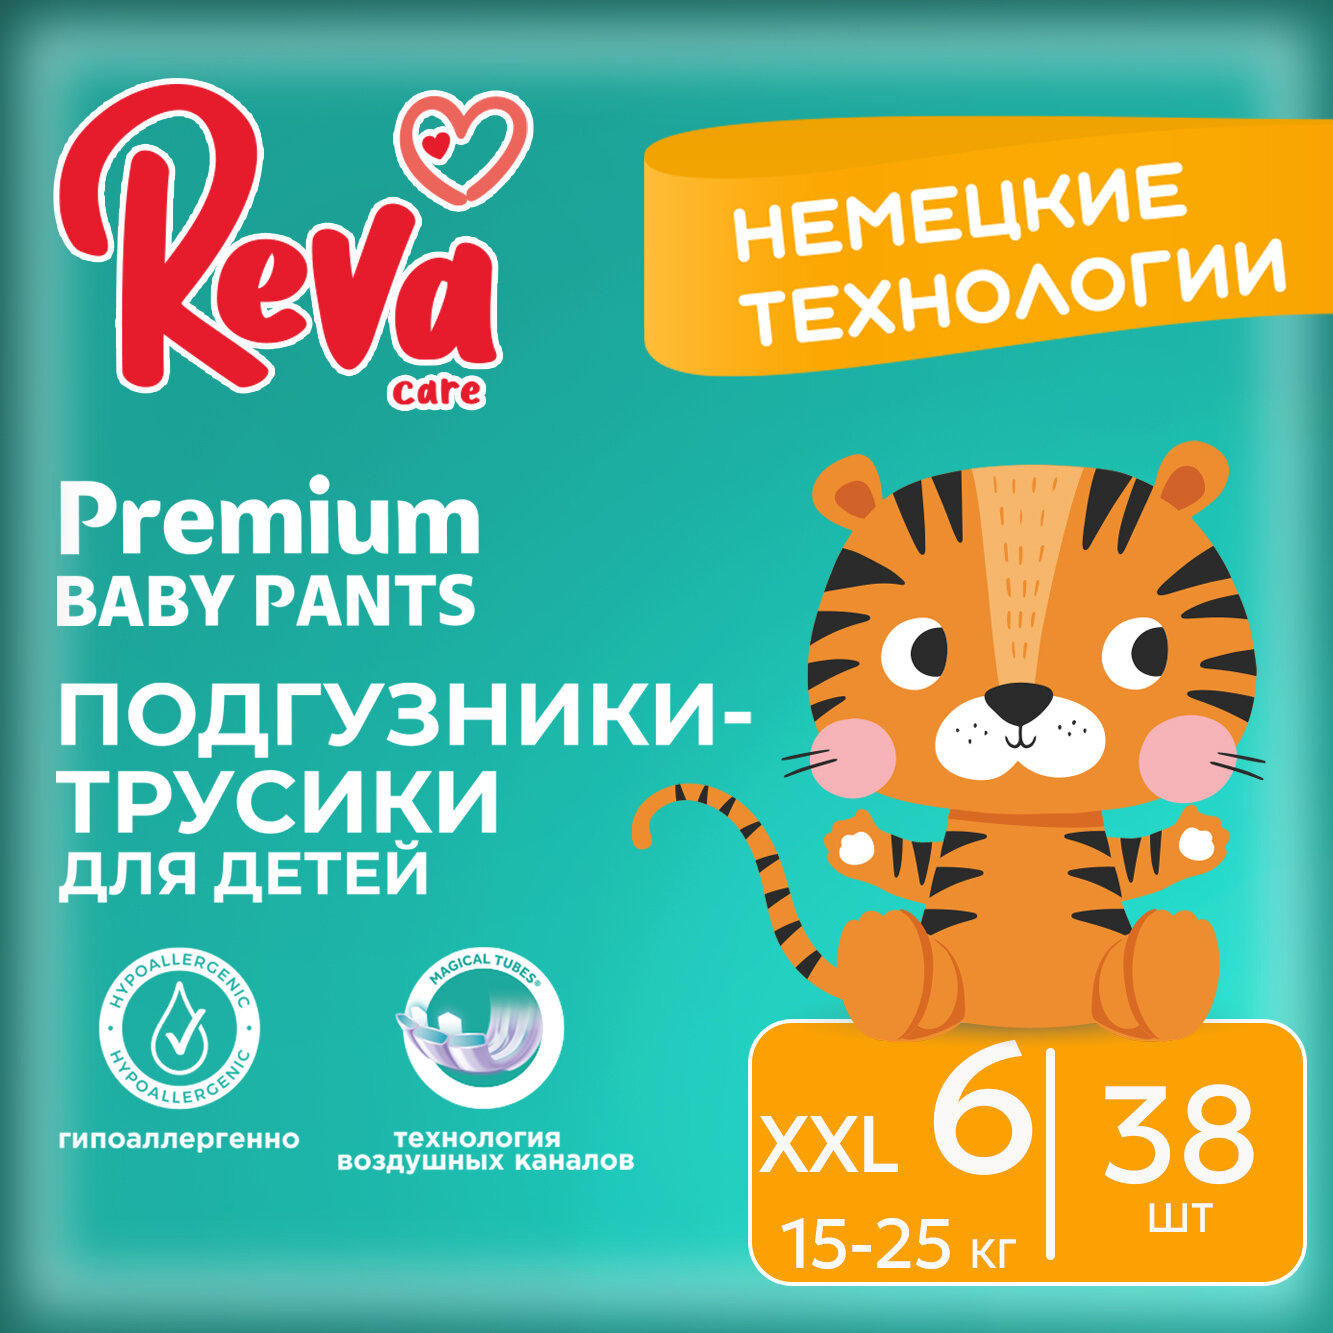 Подгузники трусики детские Reva Care Premium размер 6 XXL, для детей весом 15-25 кг, в упаковке 38 шт.